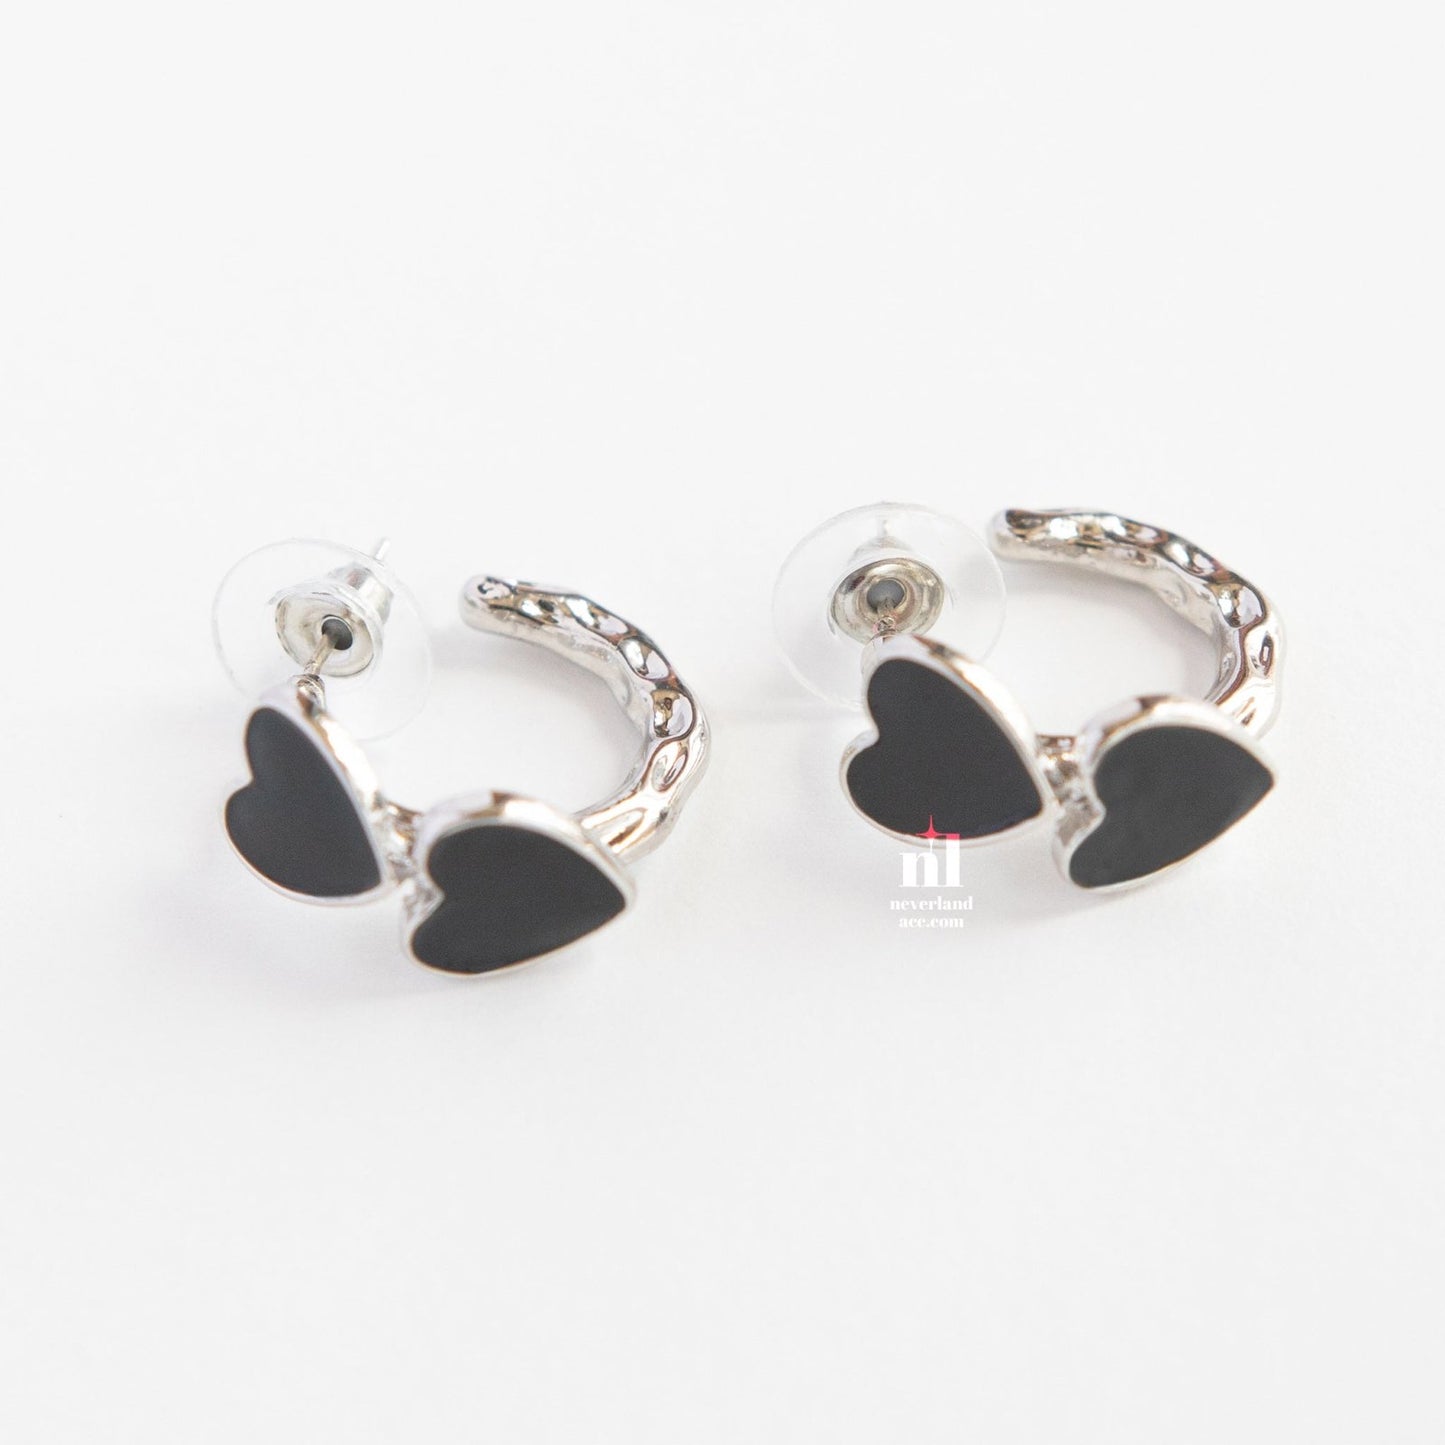 Black Heart Pendant Hoop Earrings - neverland accessories